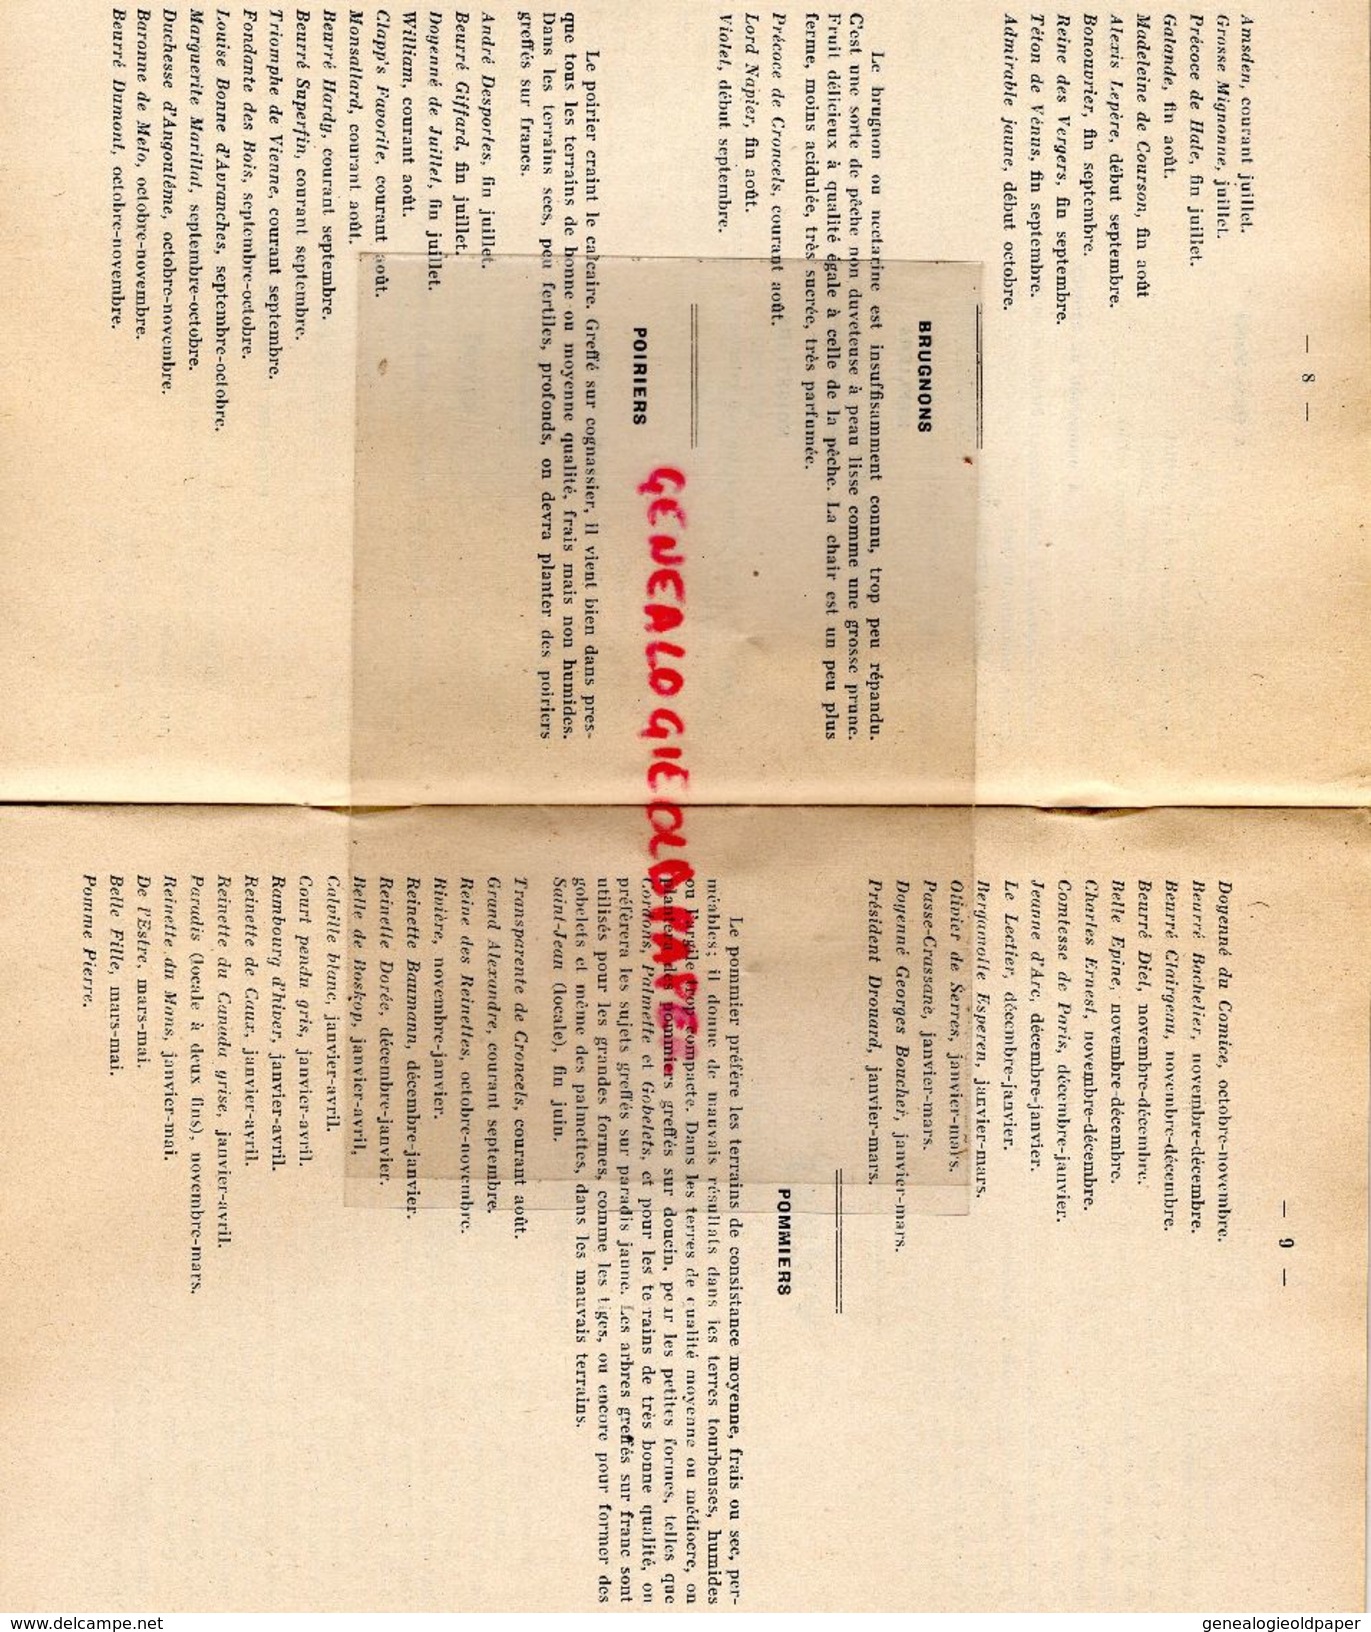 87-ST SAINT JUNIEN-RARE CATALOGUE DEGLANE DESBORDES-HORTICULTURE PEPINIERES-1938-1939-IMPRIMERIE DUBOUCHET ROCHECHOUART